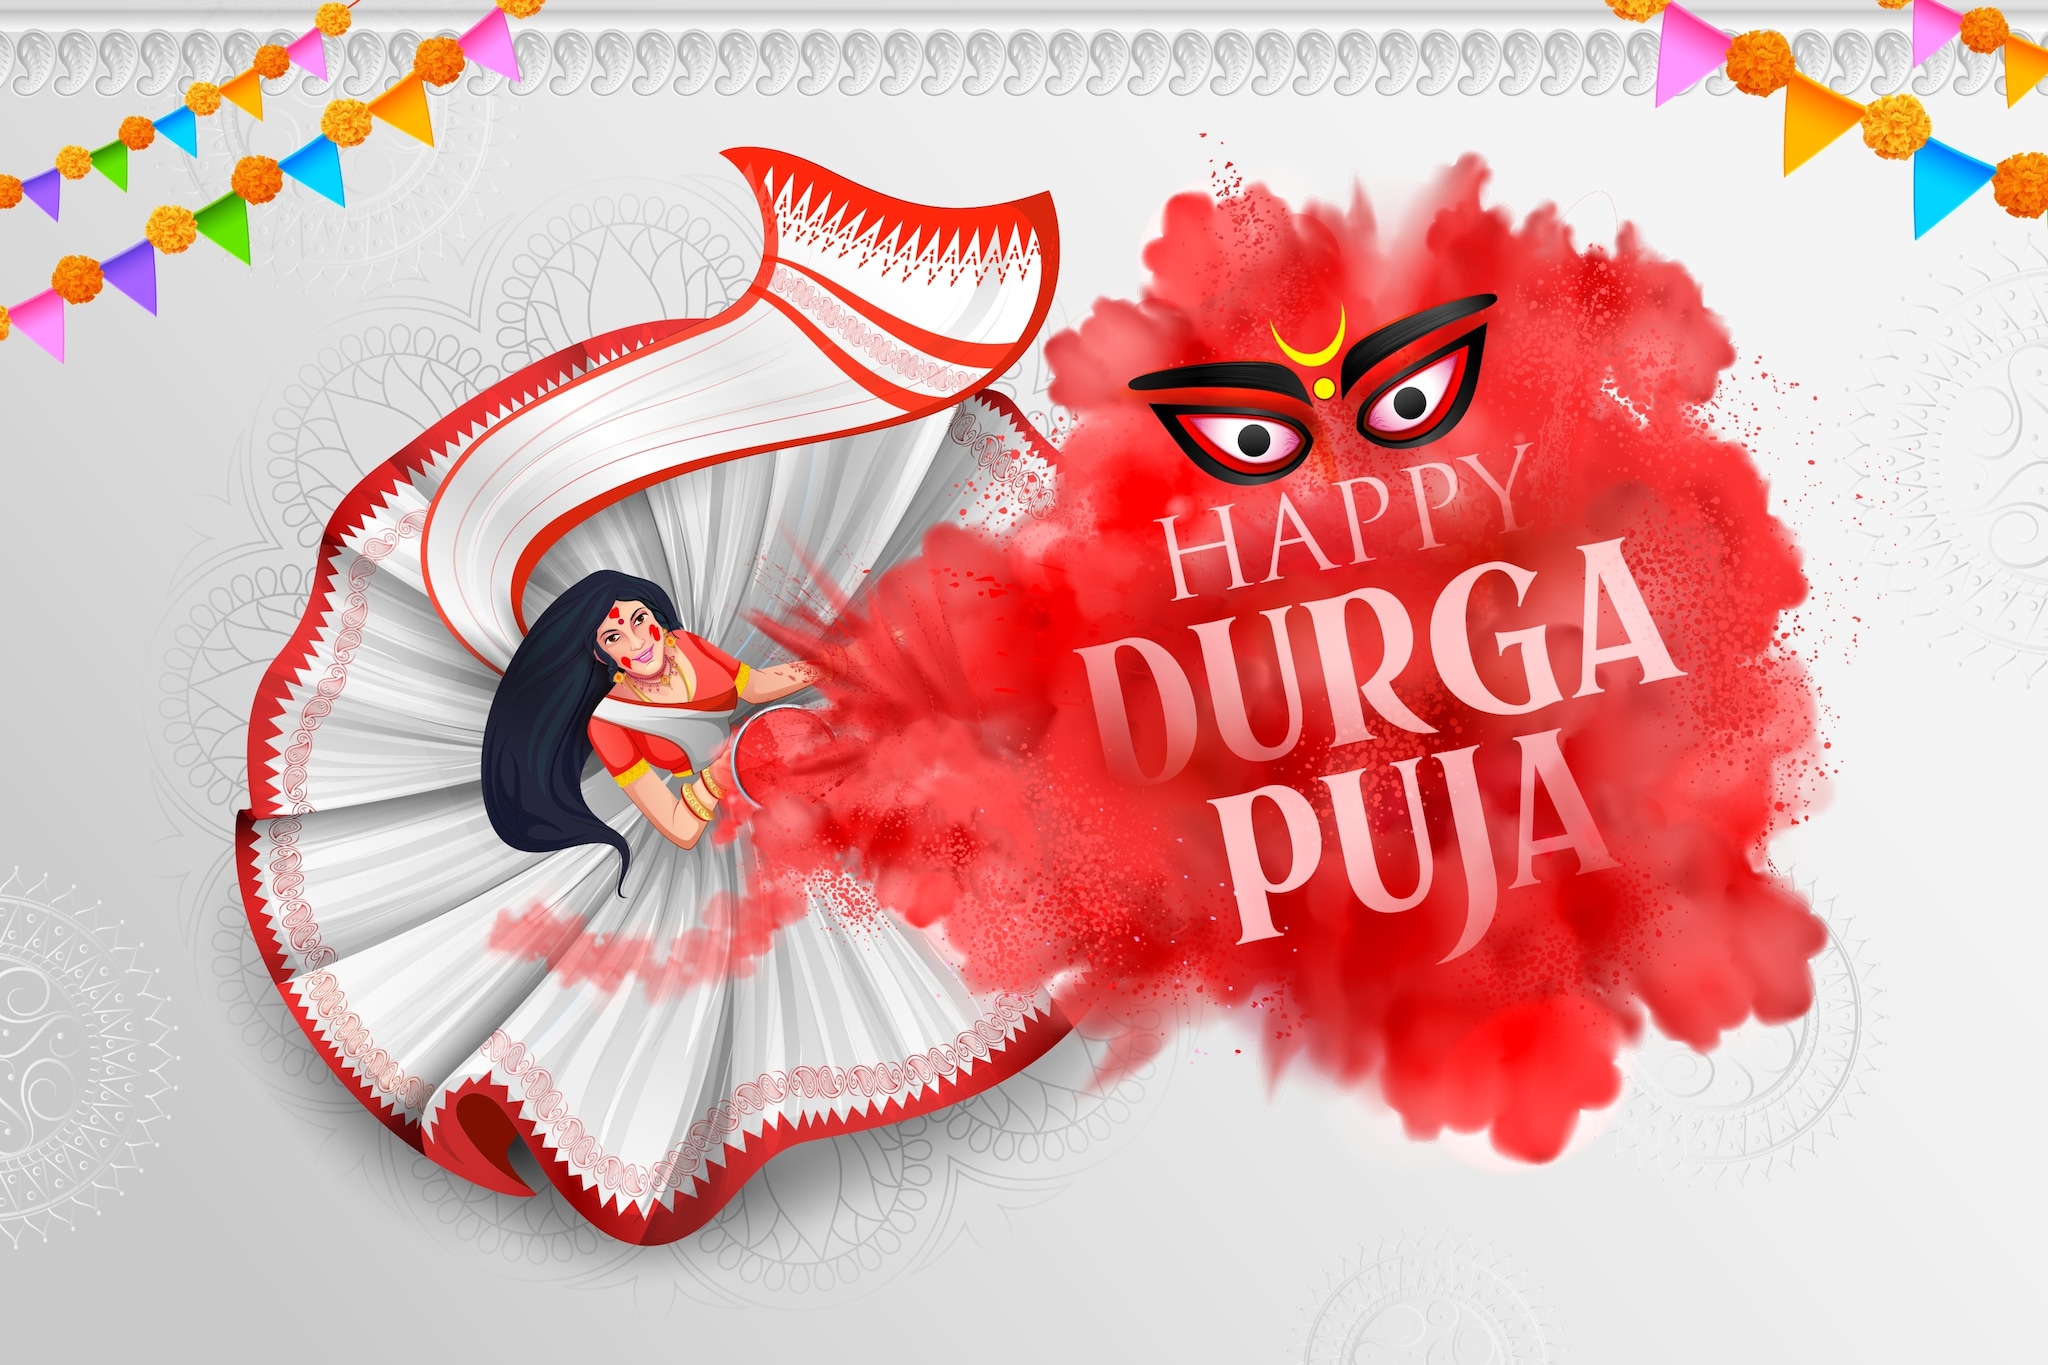 Wimbledon Cultural Association -Durga Puja